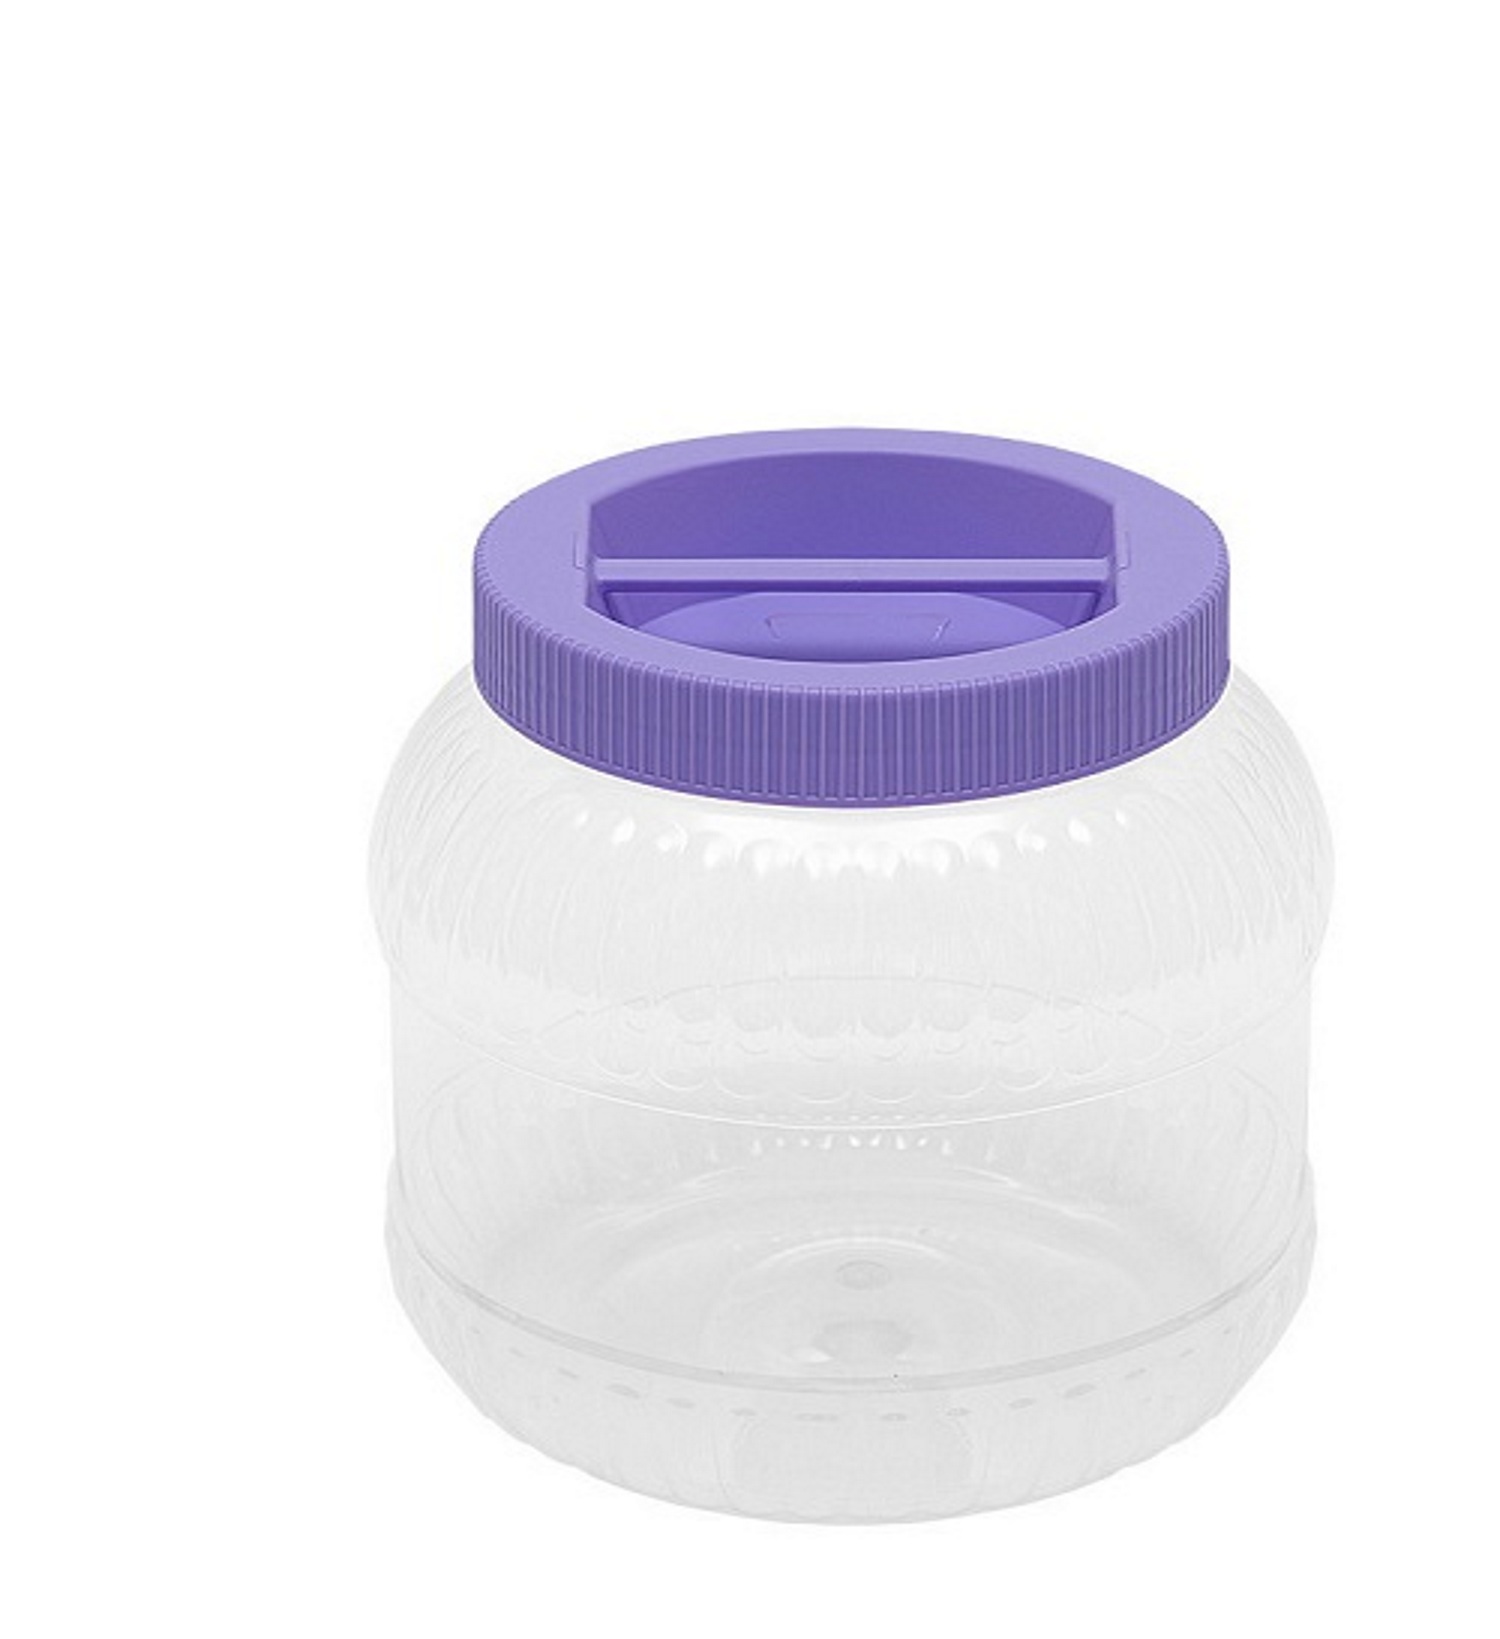 Емкость elfplast универсальная с крышкой для хранения 5 л 16.7х16.7х27.9 см фиолетовый - фото 1